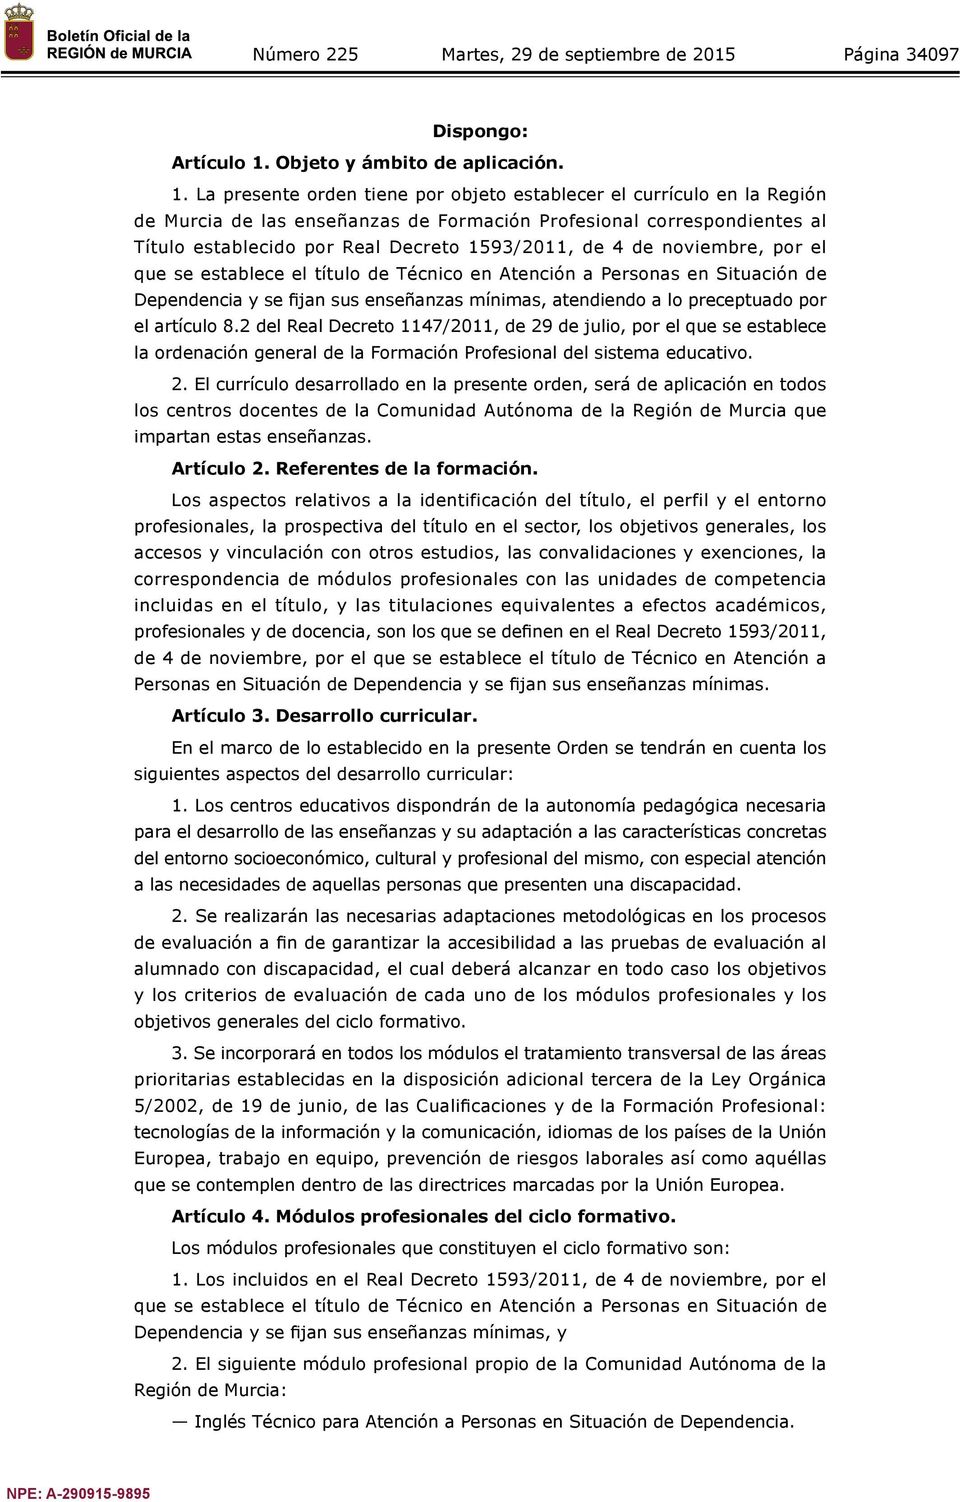 La presente orden tiene por objeto establecer el currículo en la Región de Murcia de las enseñanzas de Formación Profesional correspondientes al Título establecido por Real Decreto 1593/2011, de 4 de